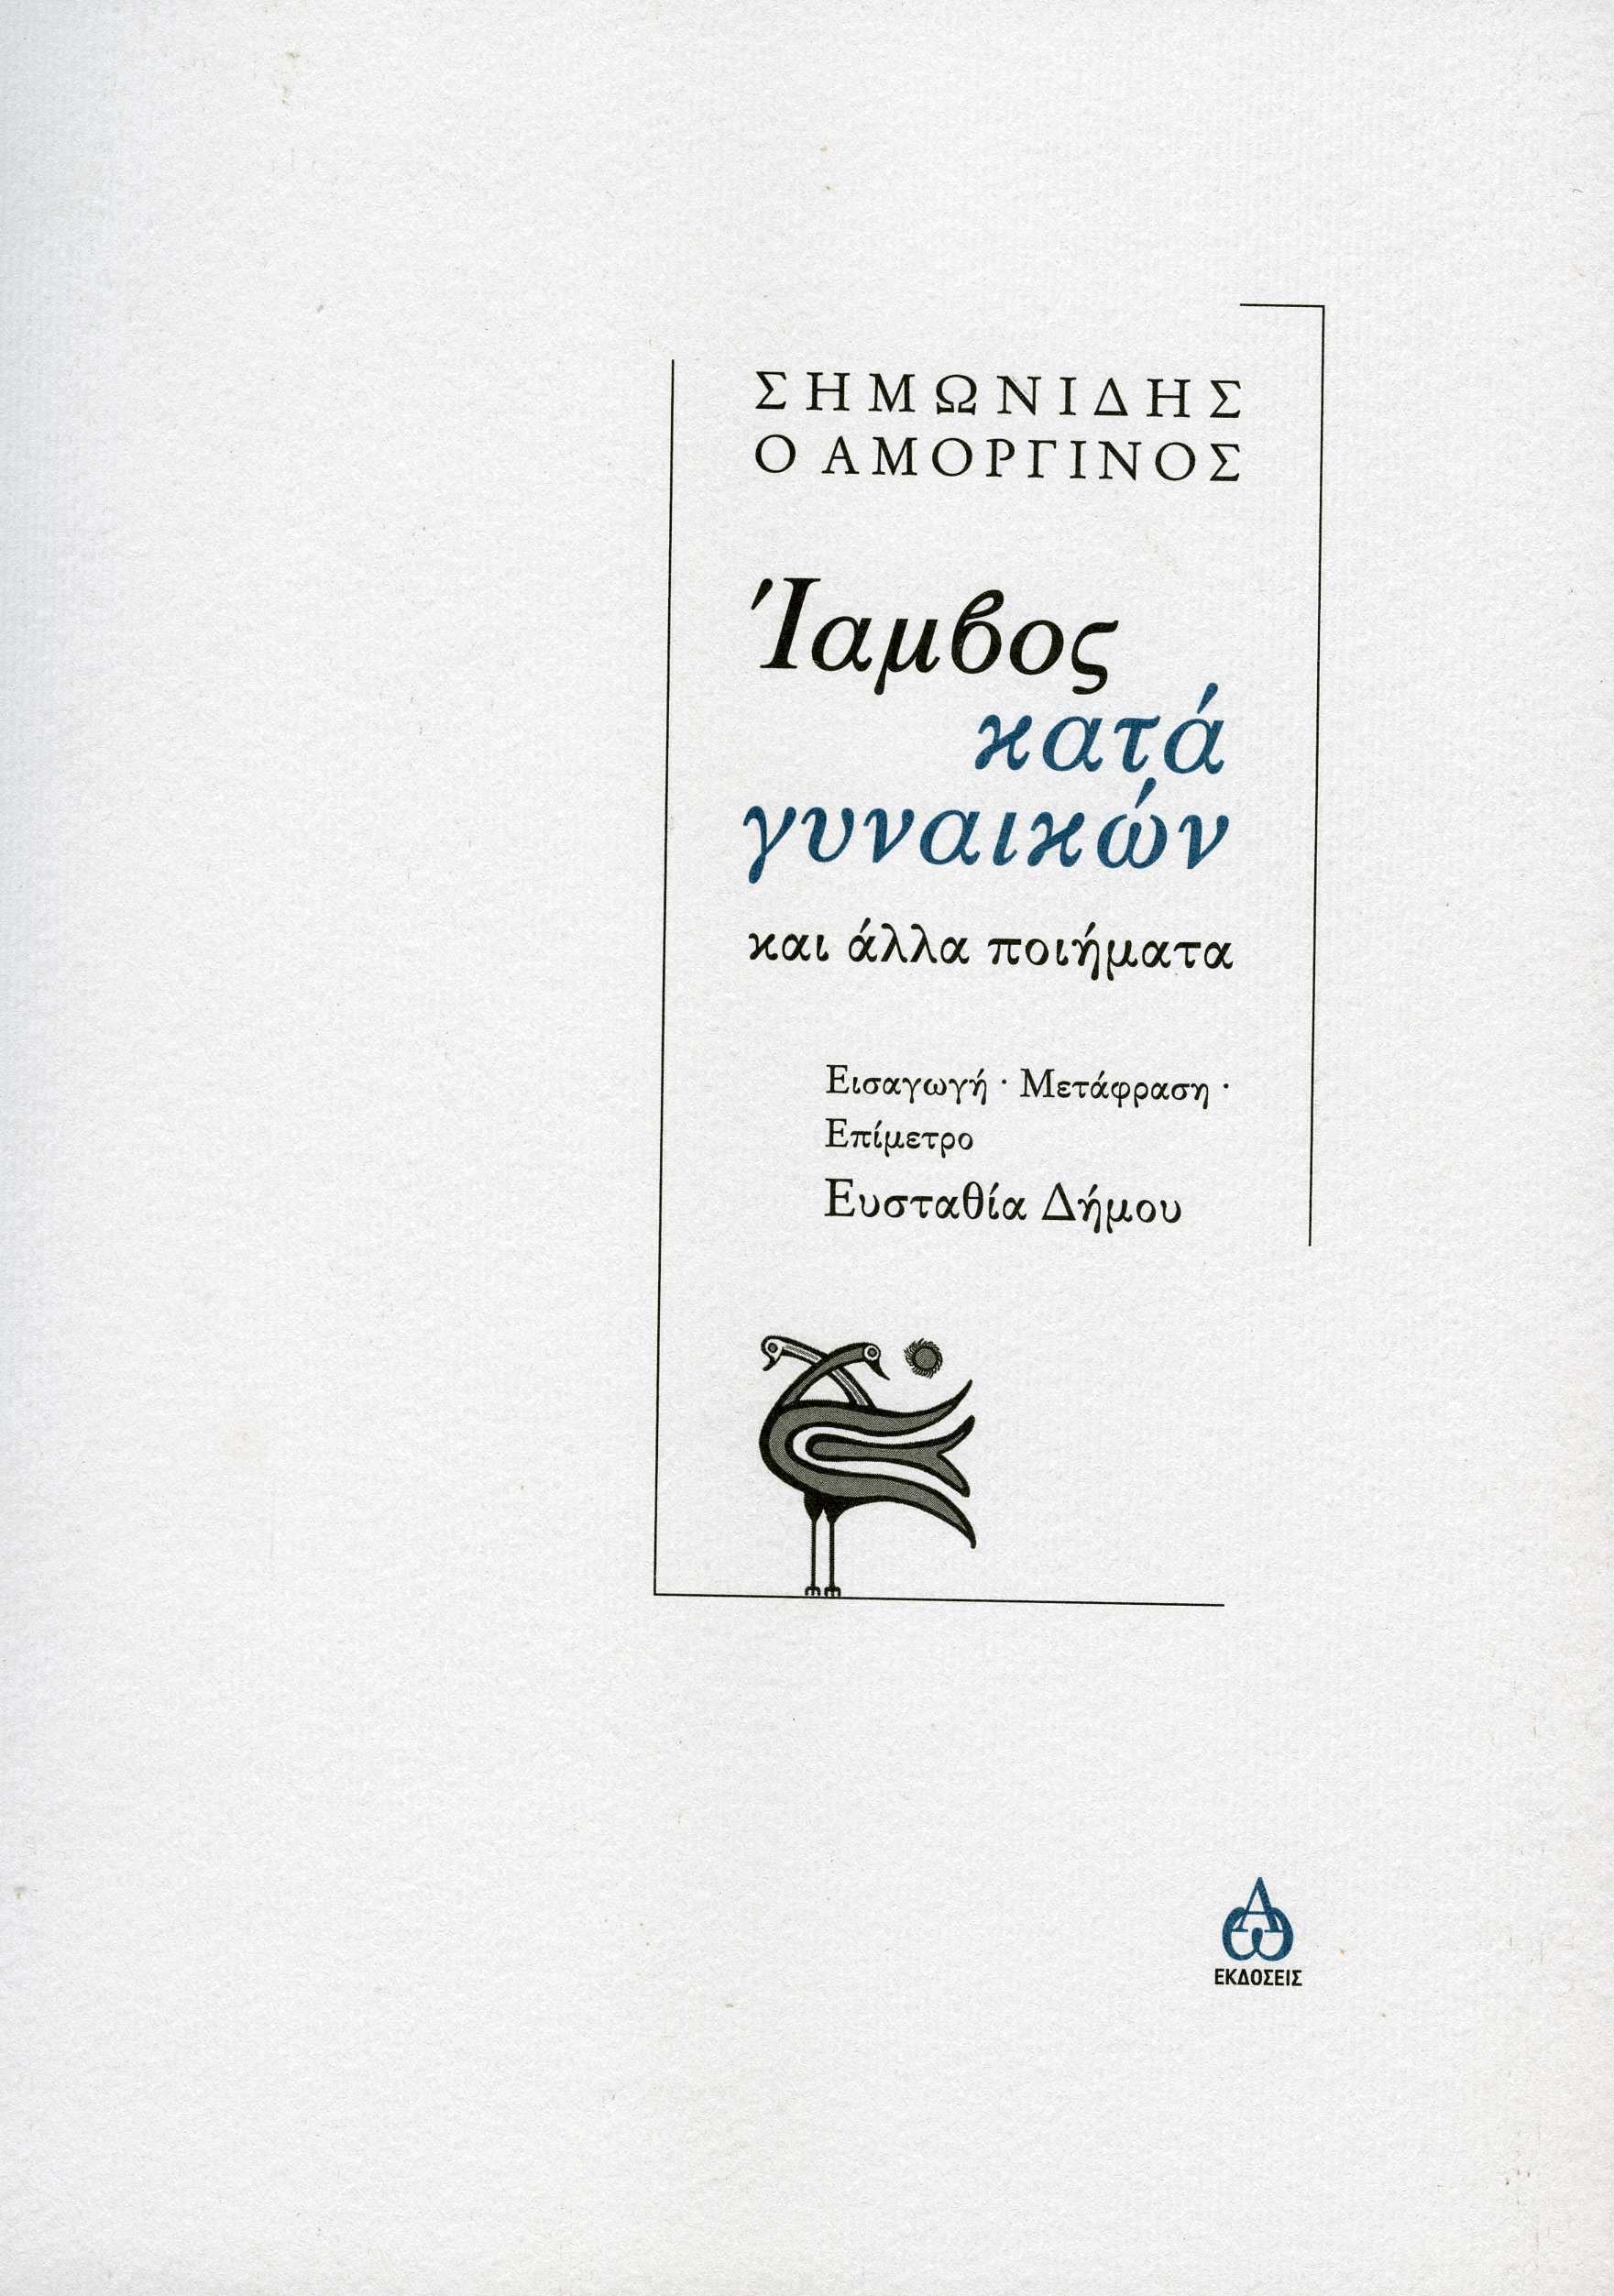 You are currently viewing Λίλια Τσούβα: Ο ποιητής Σημωνίδης ο Αμοργίνος και η ανατρεπτική ανάγνωσή του από την Ευσταθία Δήμου